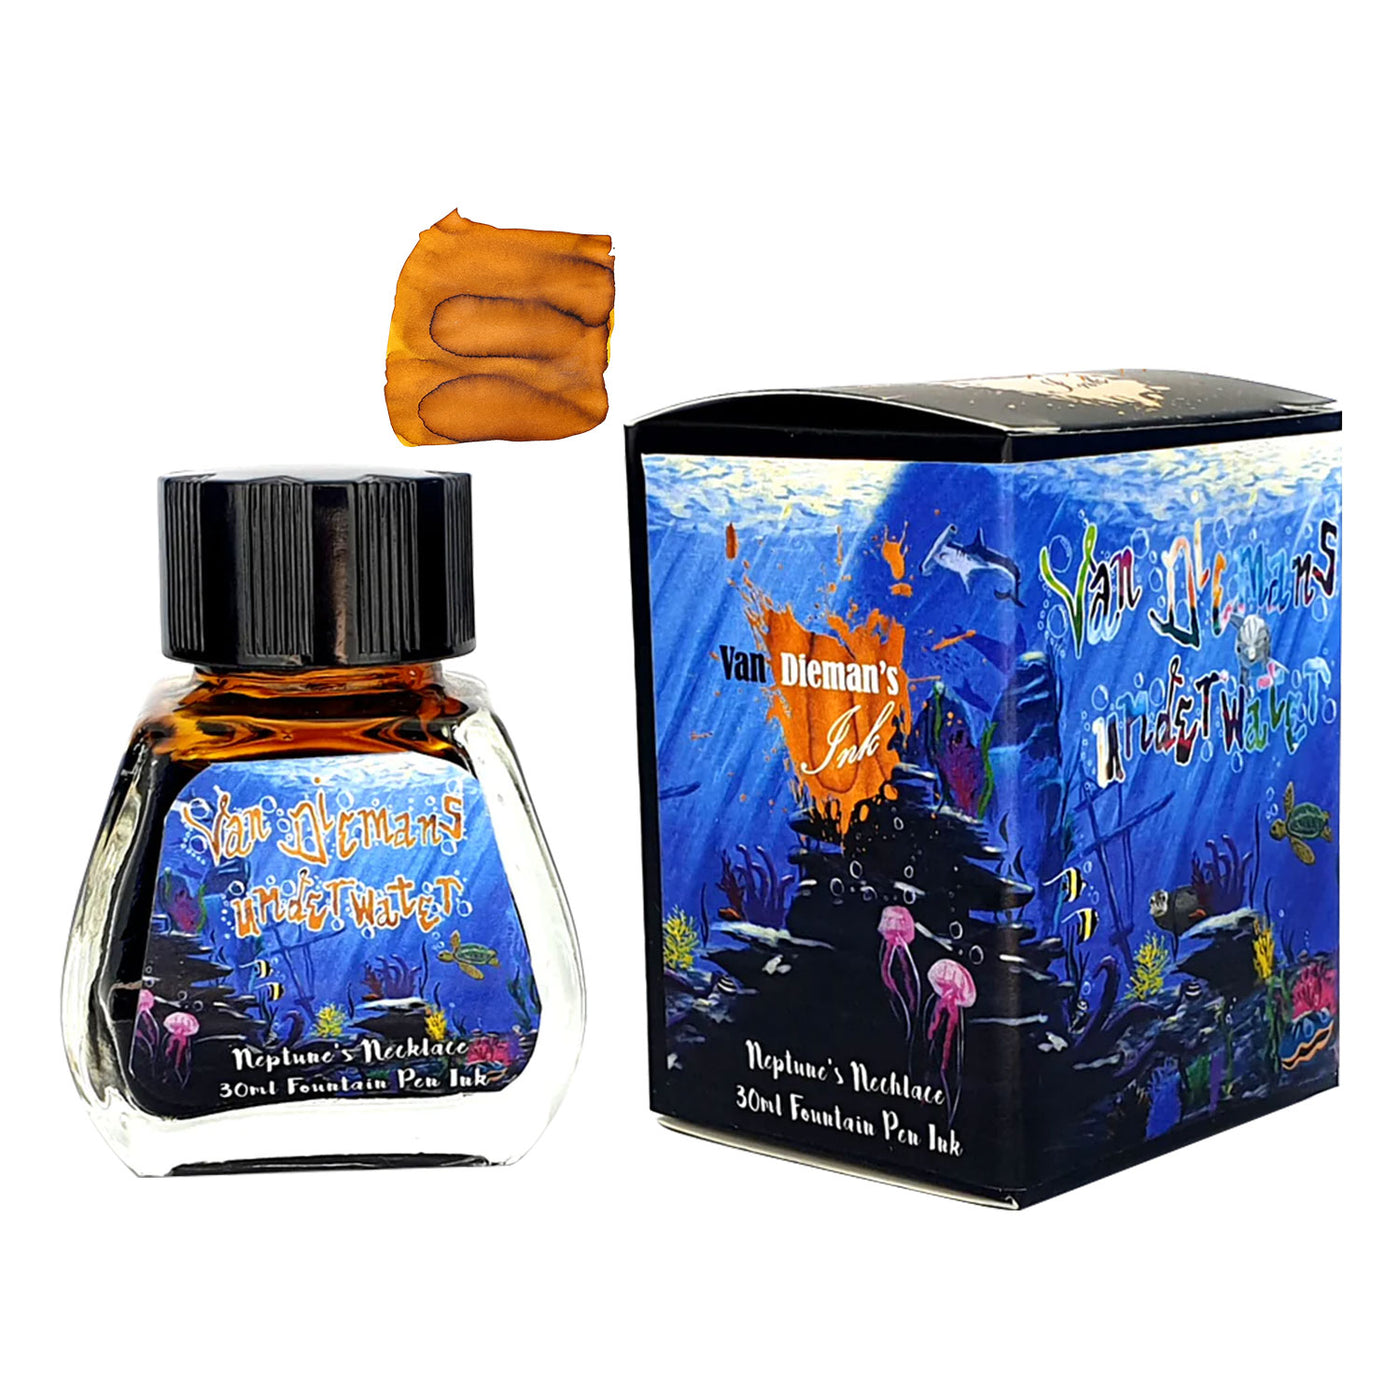 Van Dieman's Underwater Ink Bottle Neptunes Necklace - 30ml